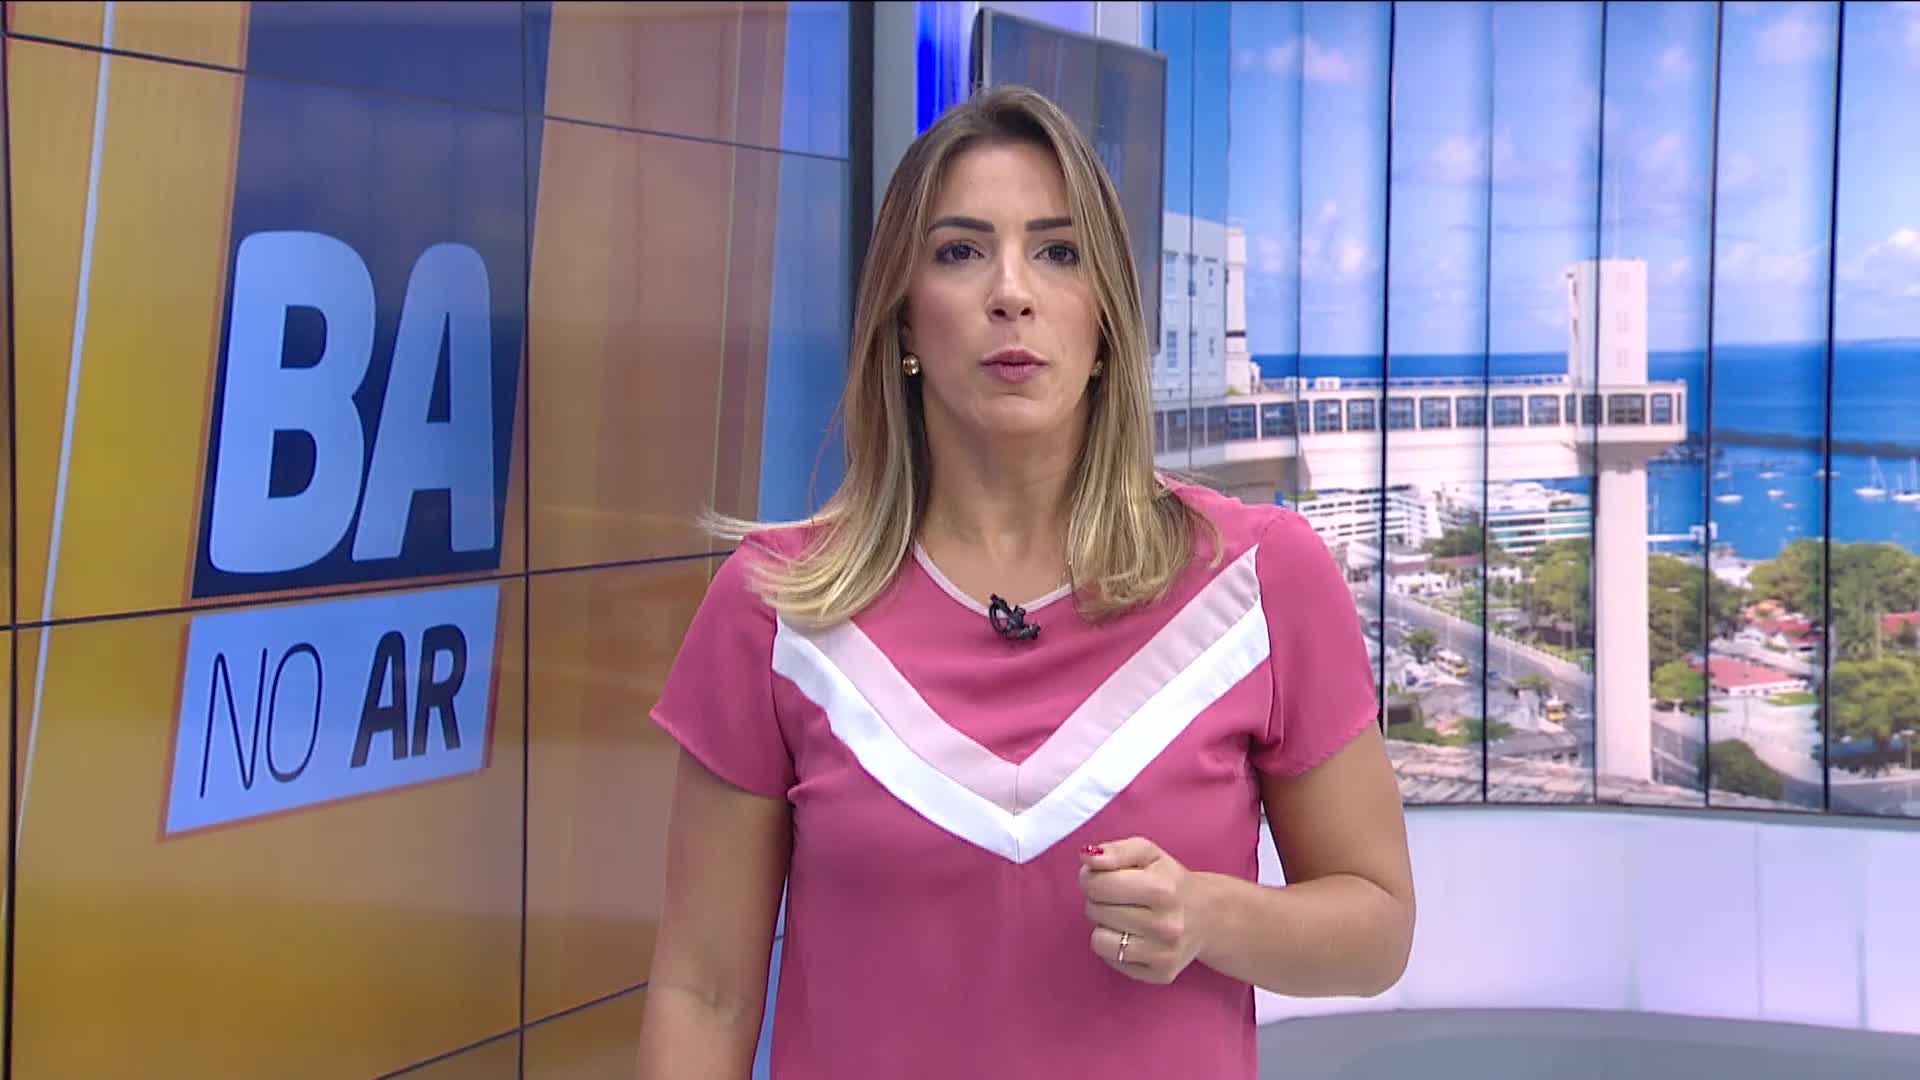 Vídeo: MP diz que entrevista de Bolsonaro à RecordTV não desrespeitou a lei